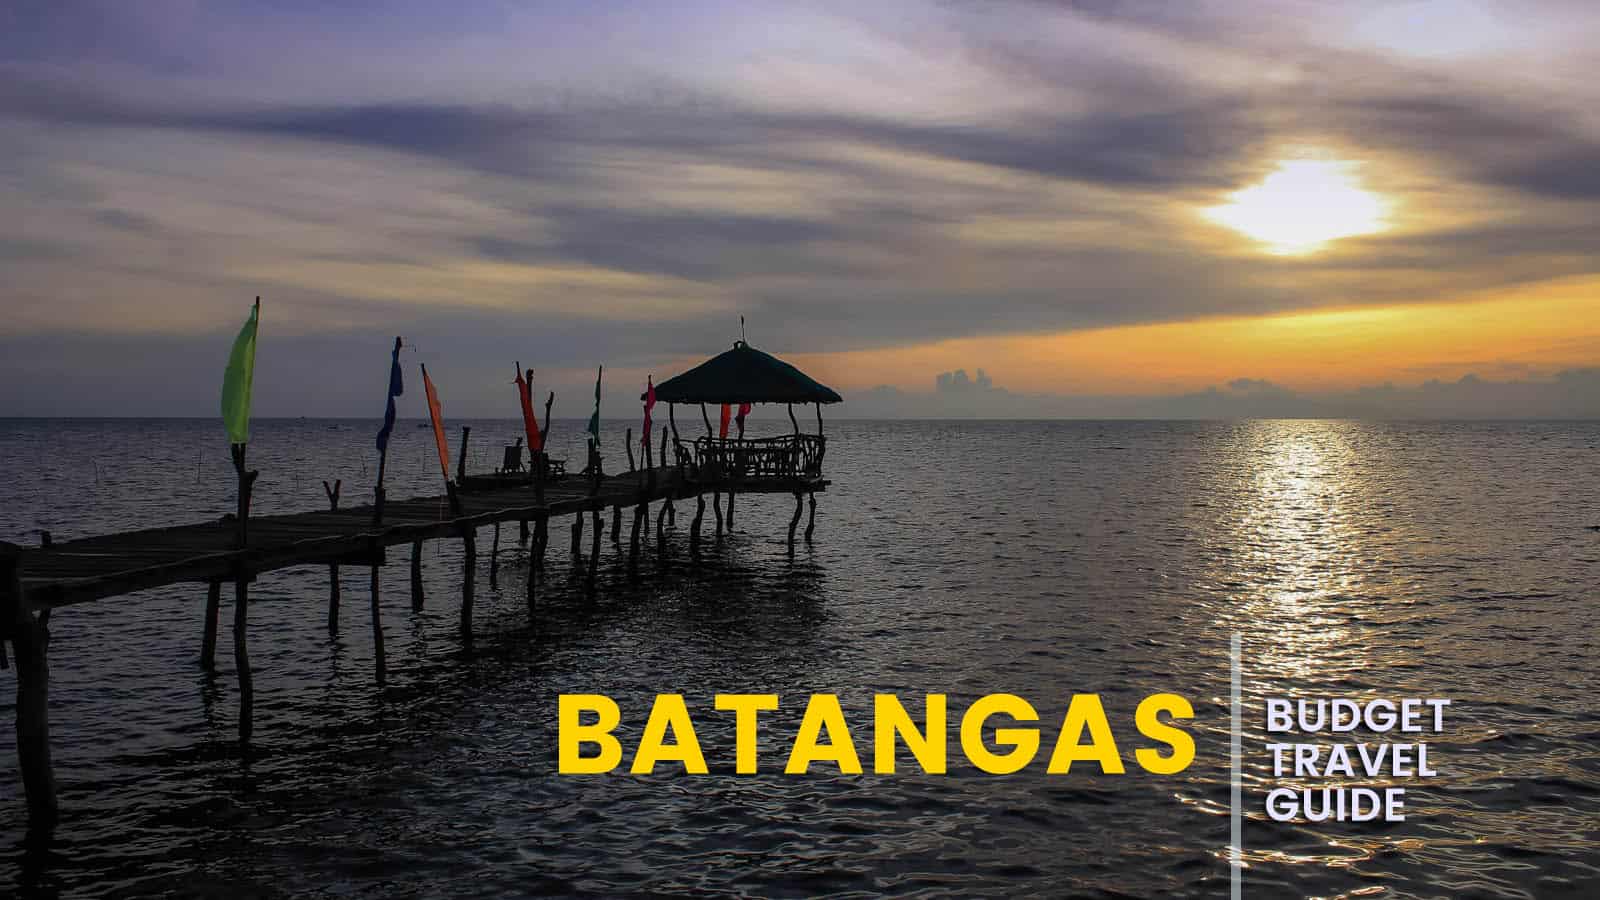 BATANGAS: Budget Travel Guide